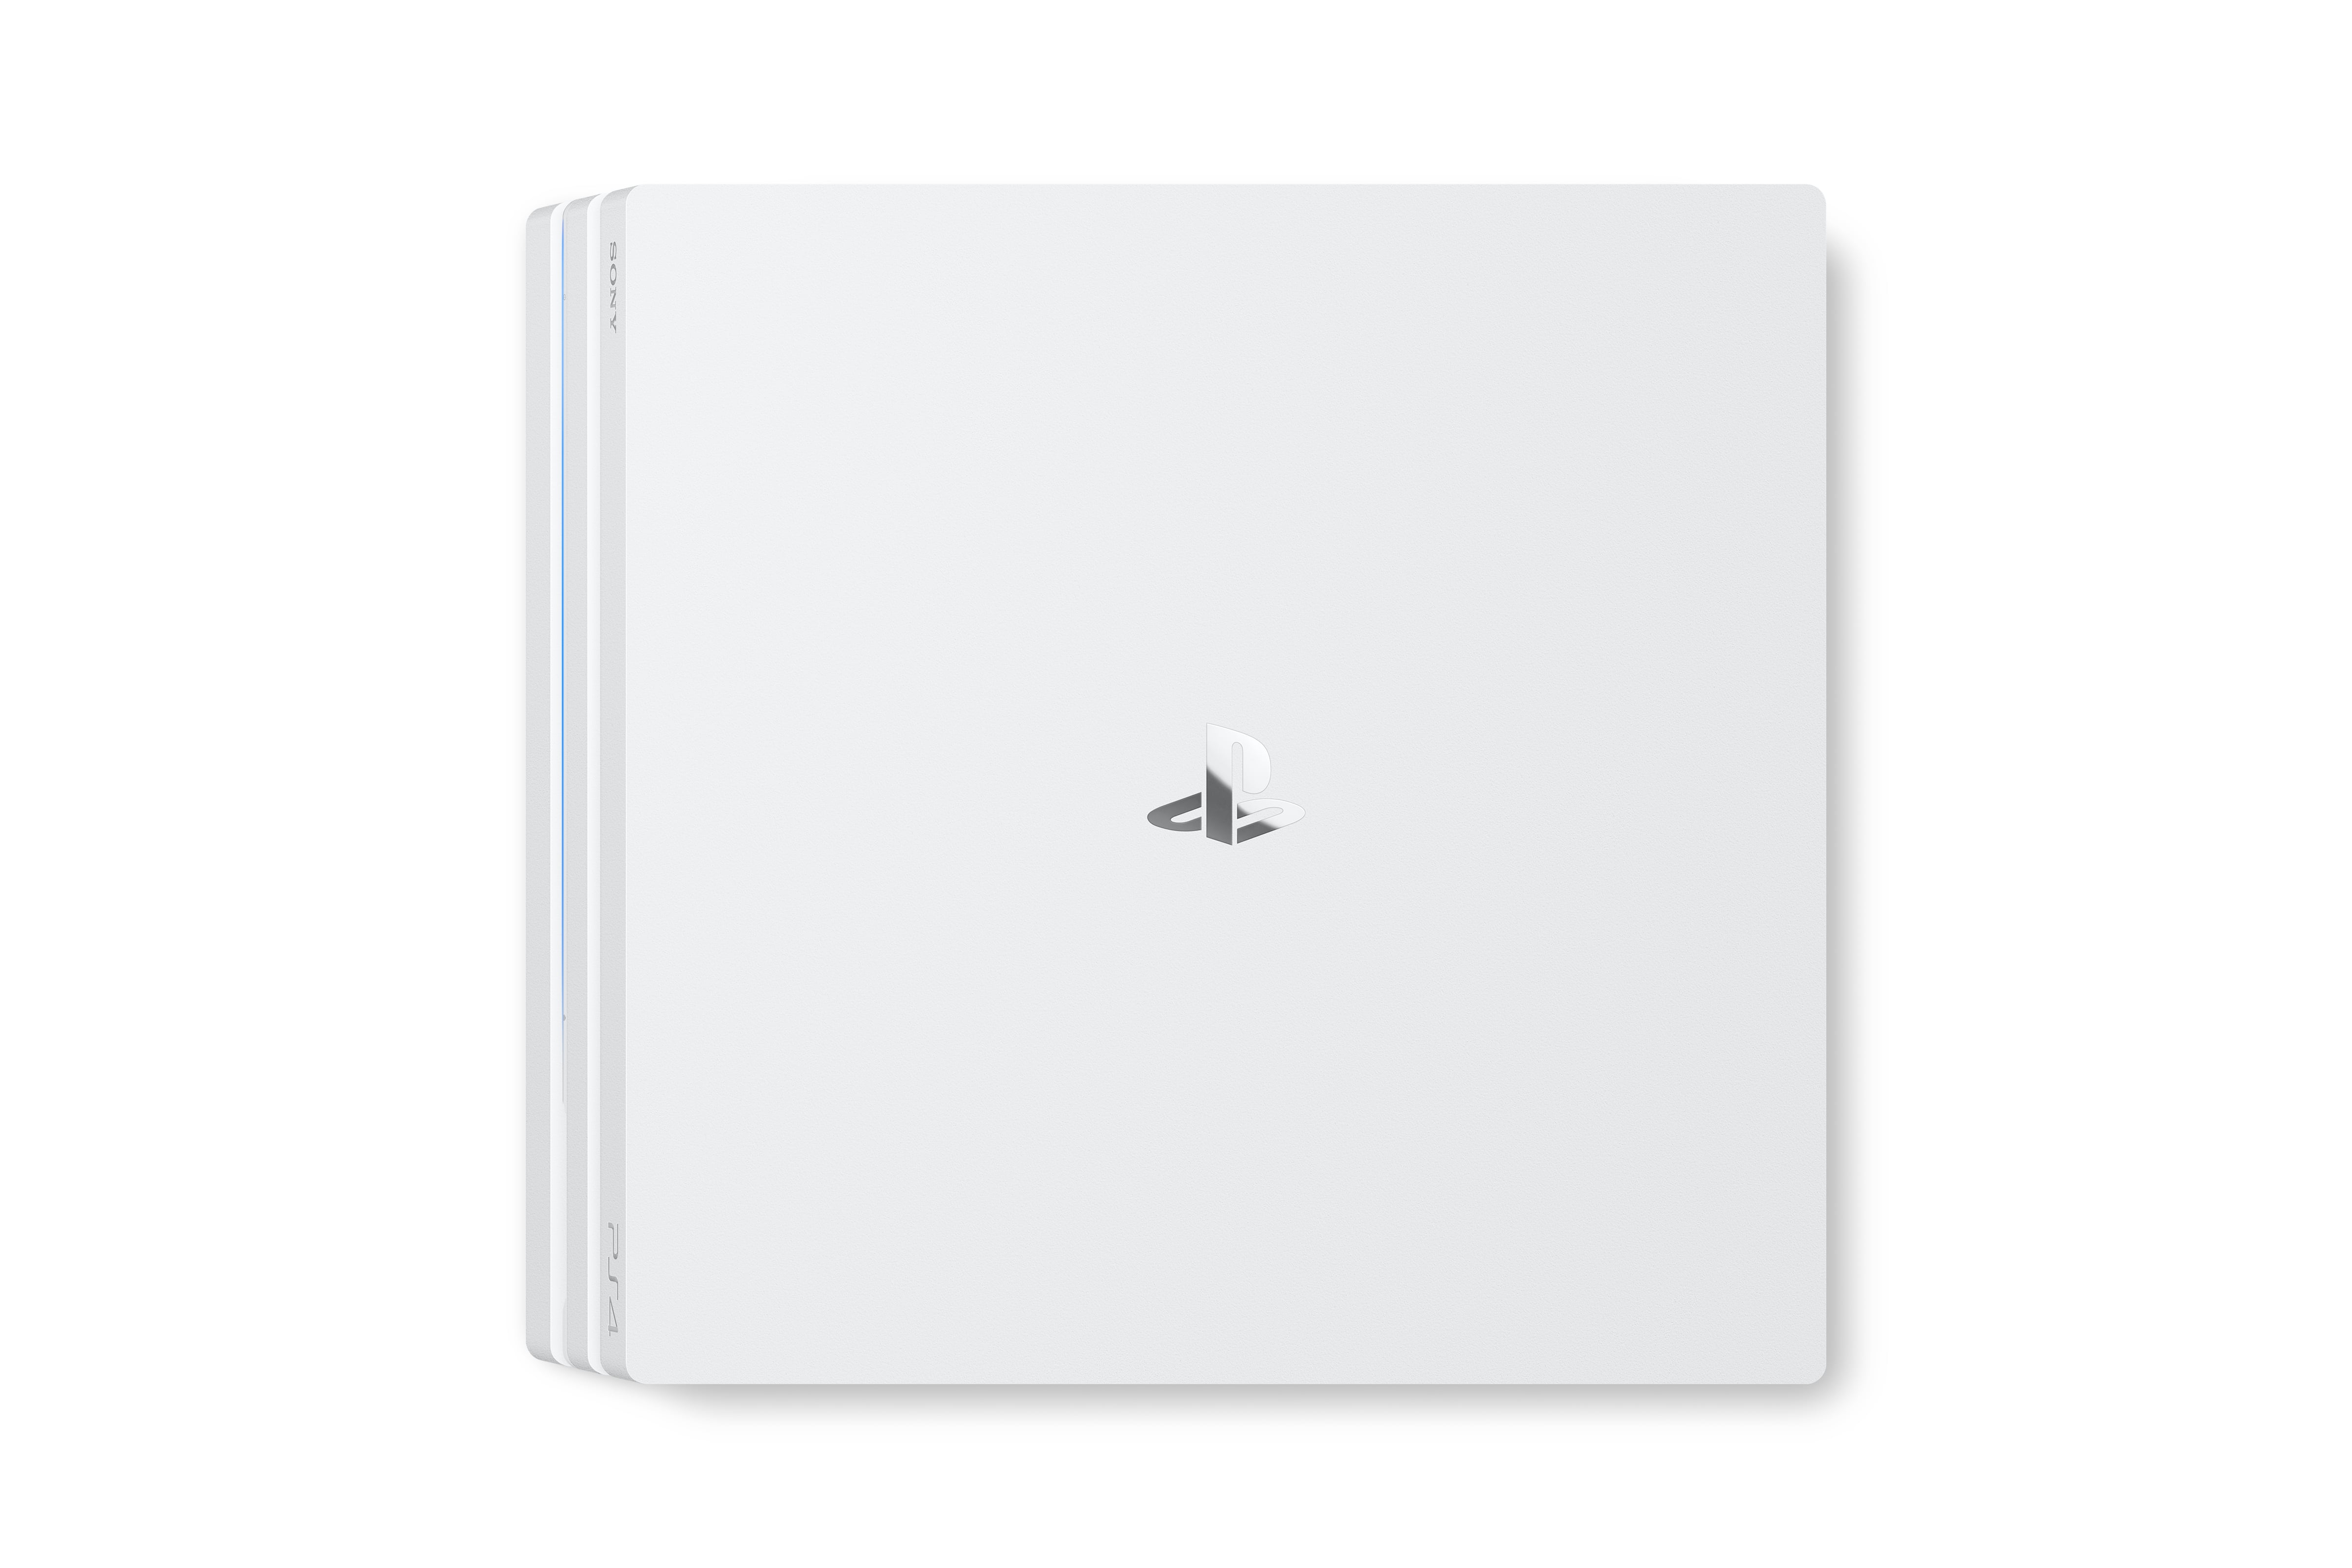 Novo bundle do PS4 traz console branco e Destiny por 450 dólares - TecMundo